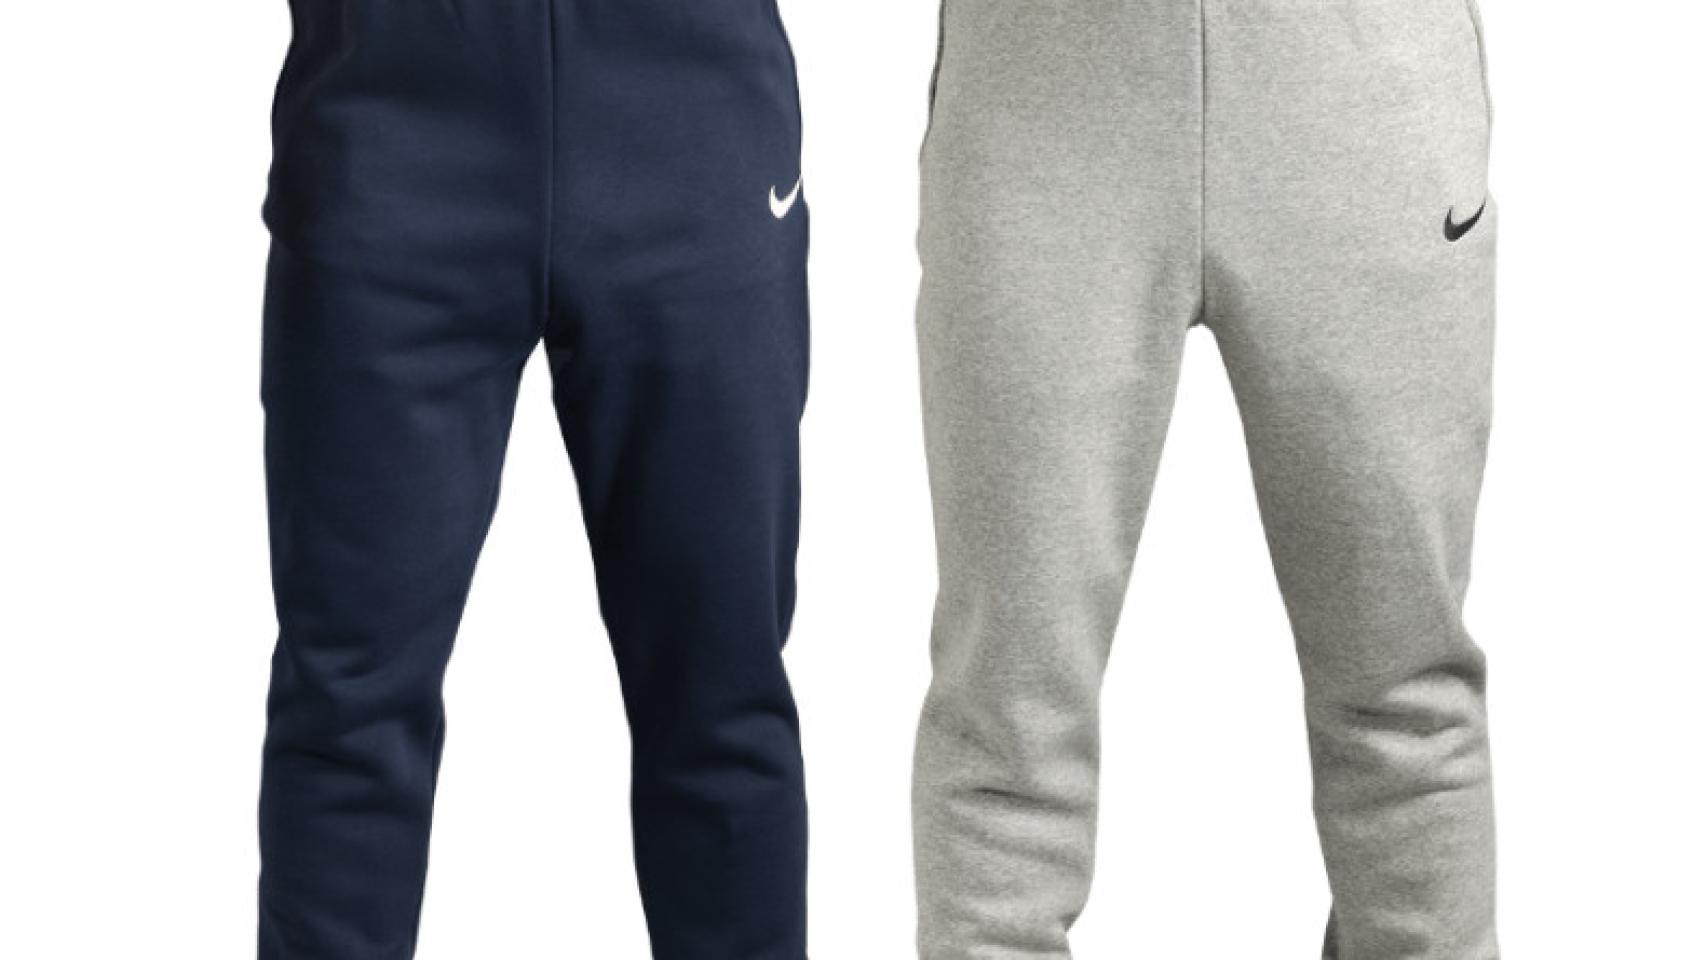 Víctor Posicionar Tierras altas Aldi ya vende hasta pantalones Nike para hacer deporte tirados de precio:  cuestan 29,99 euros